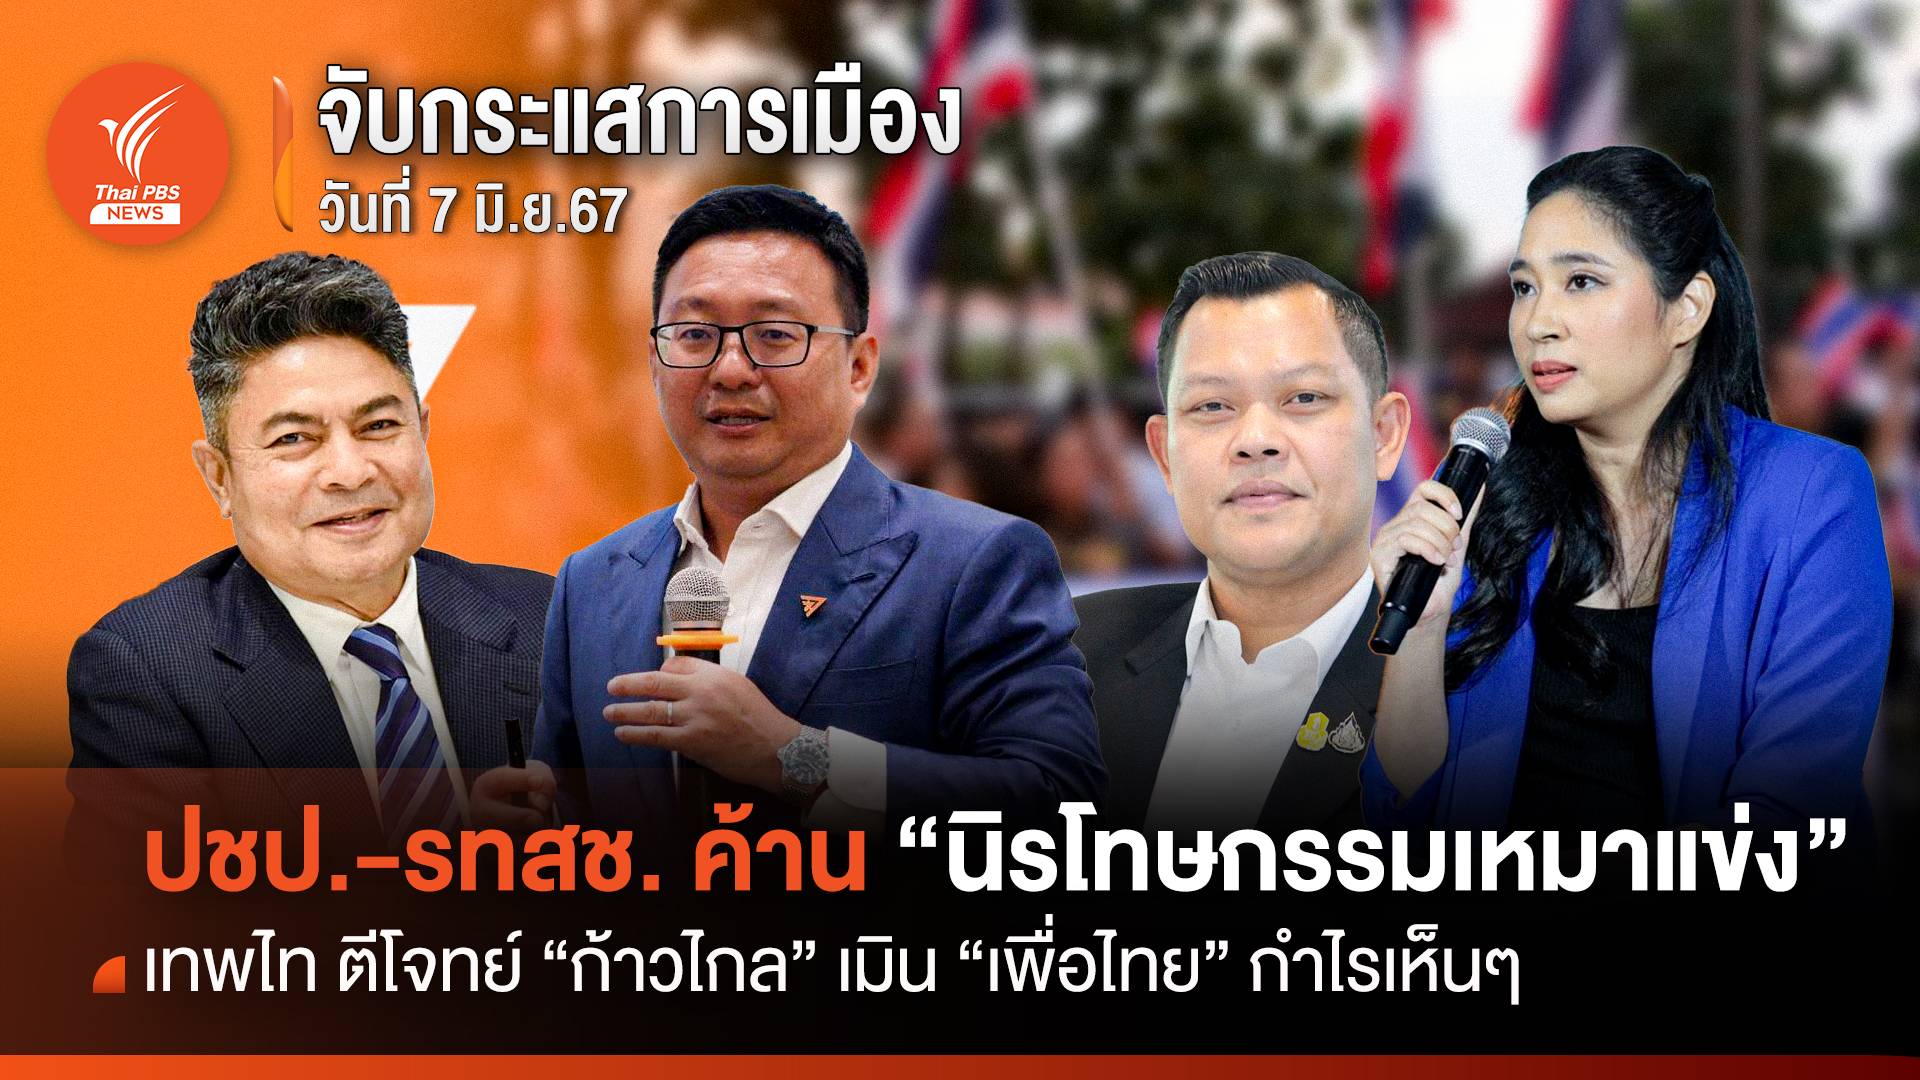 จับกระแสการเมือง : วันที่ 7 มิ.ย.67 ปชป.-รทสช. ค้าน "นิรโทษกรรมเหมาเข่ง" เทพไท ตีโจทย์ "ก้าวไกล" เมิน "เพื่อไทย" กำไรเห็นๆ